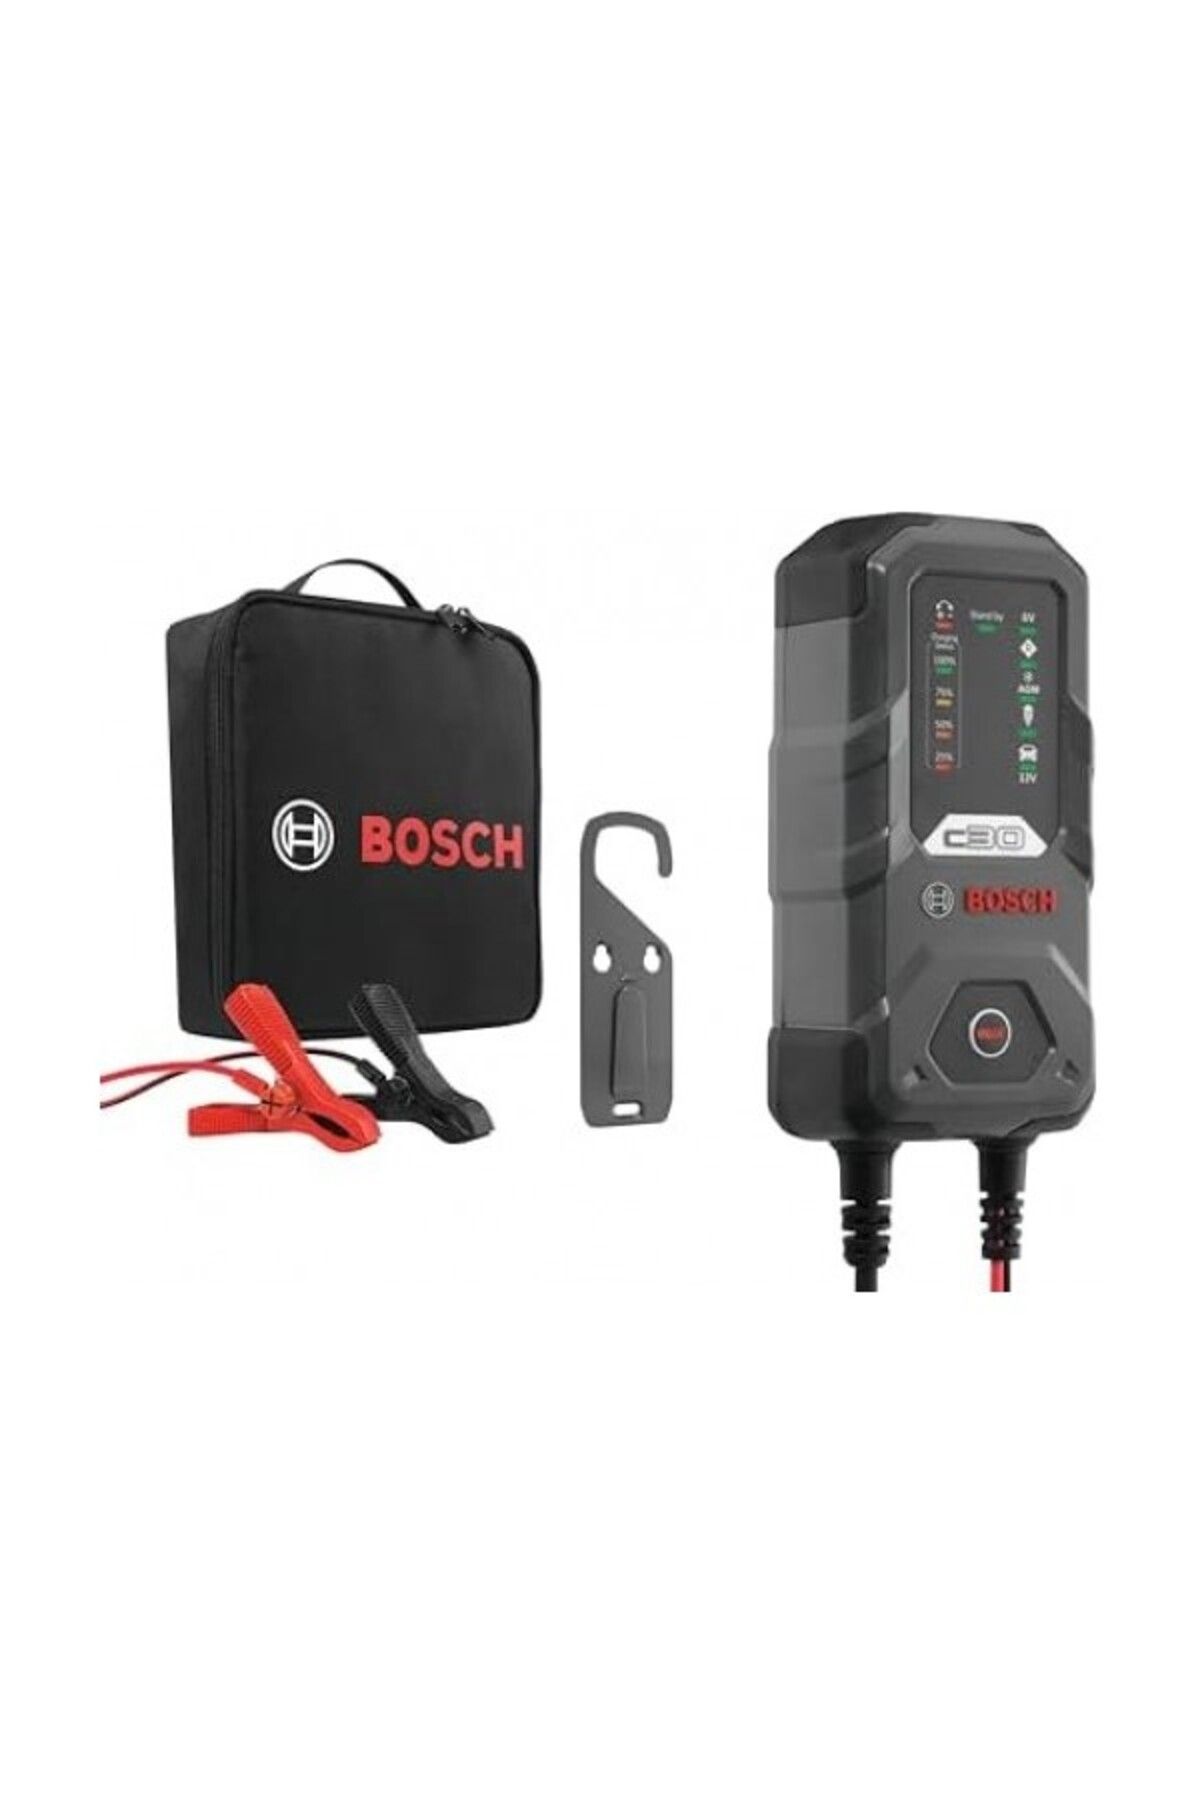 Bosch C30 Akü Şarj Aleti